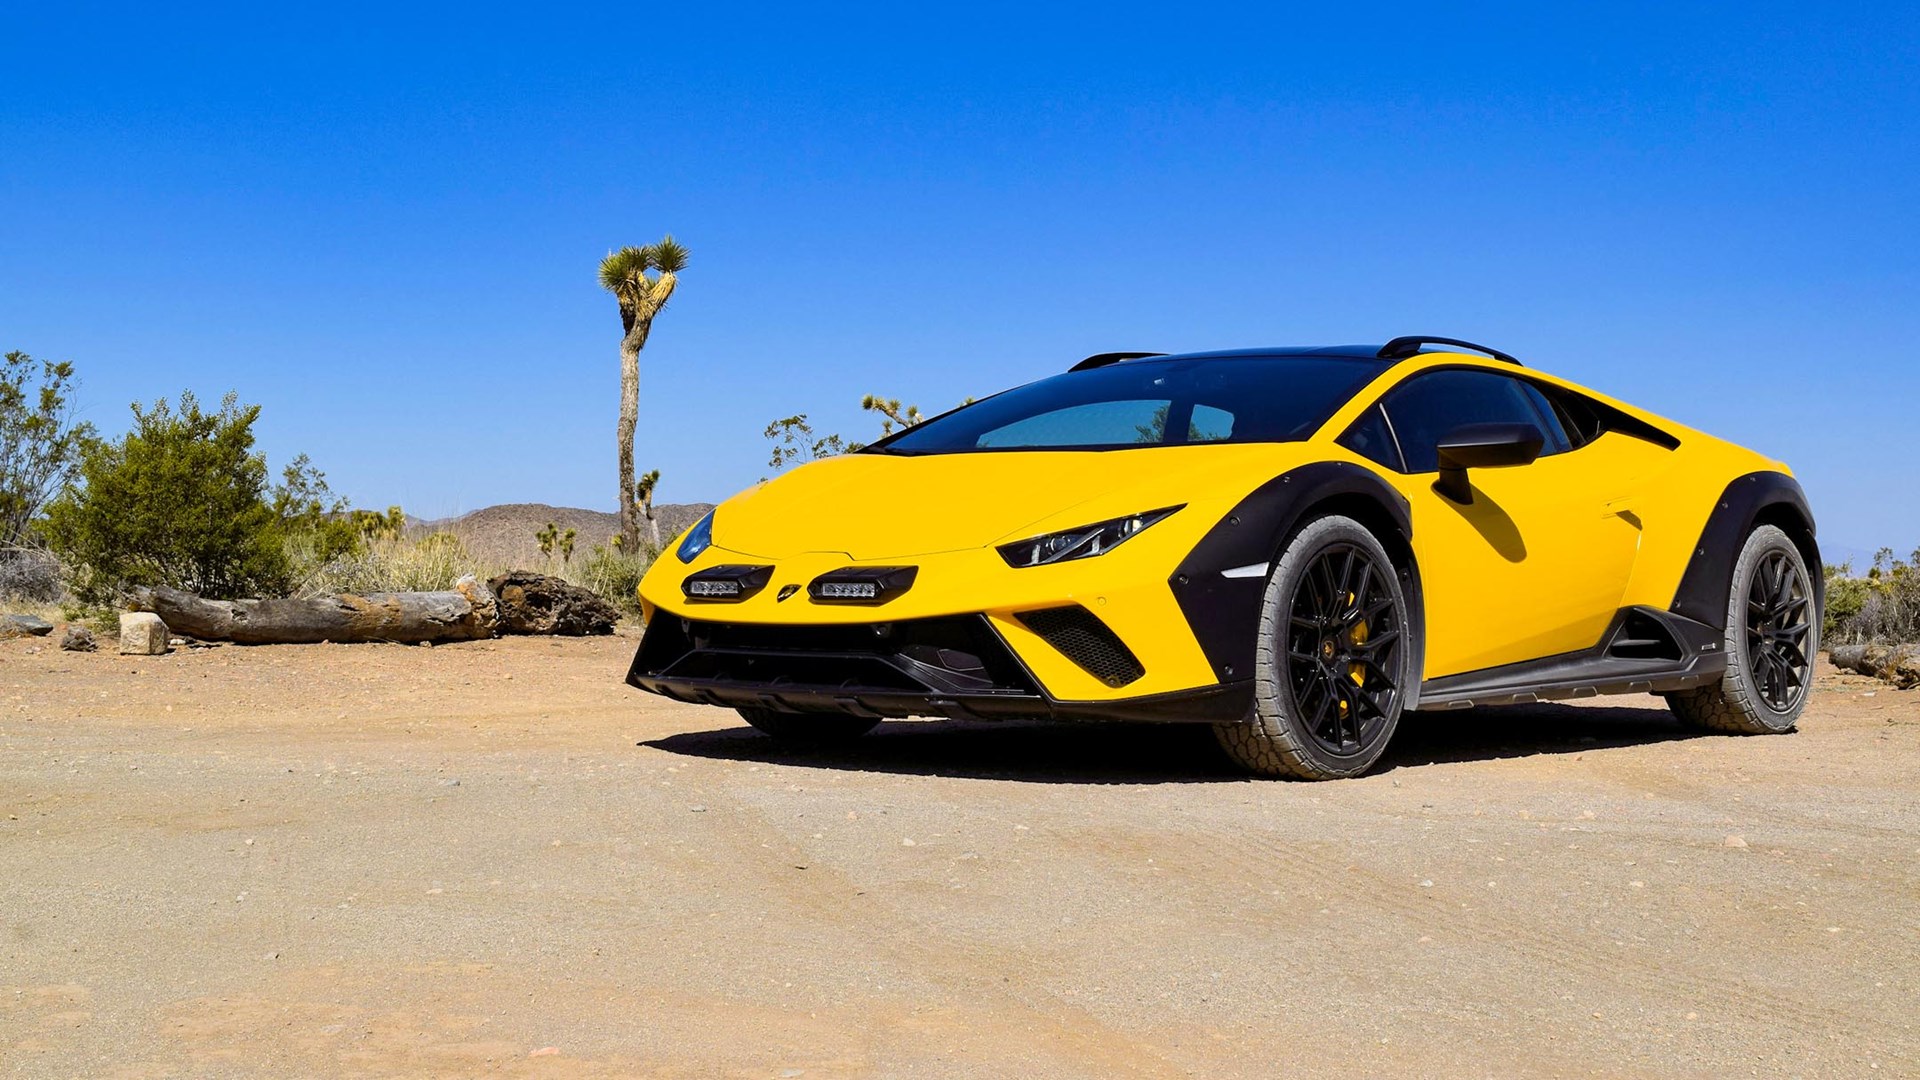 The Lamborghini Sterrato is a Beacon of Joy